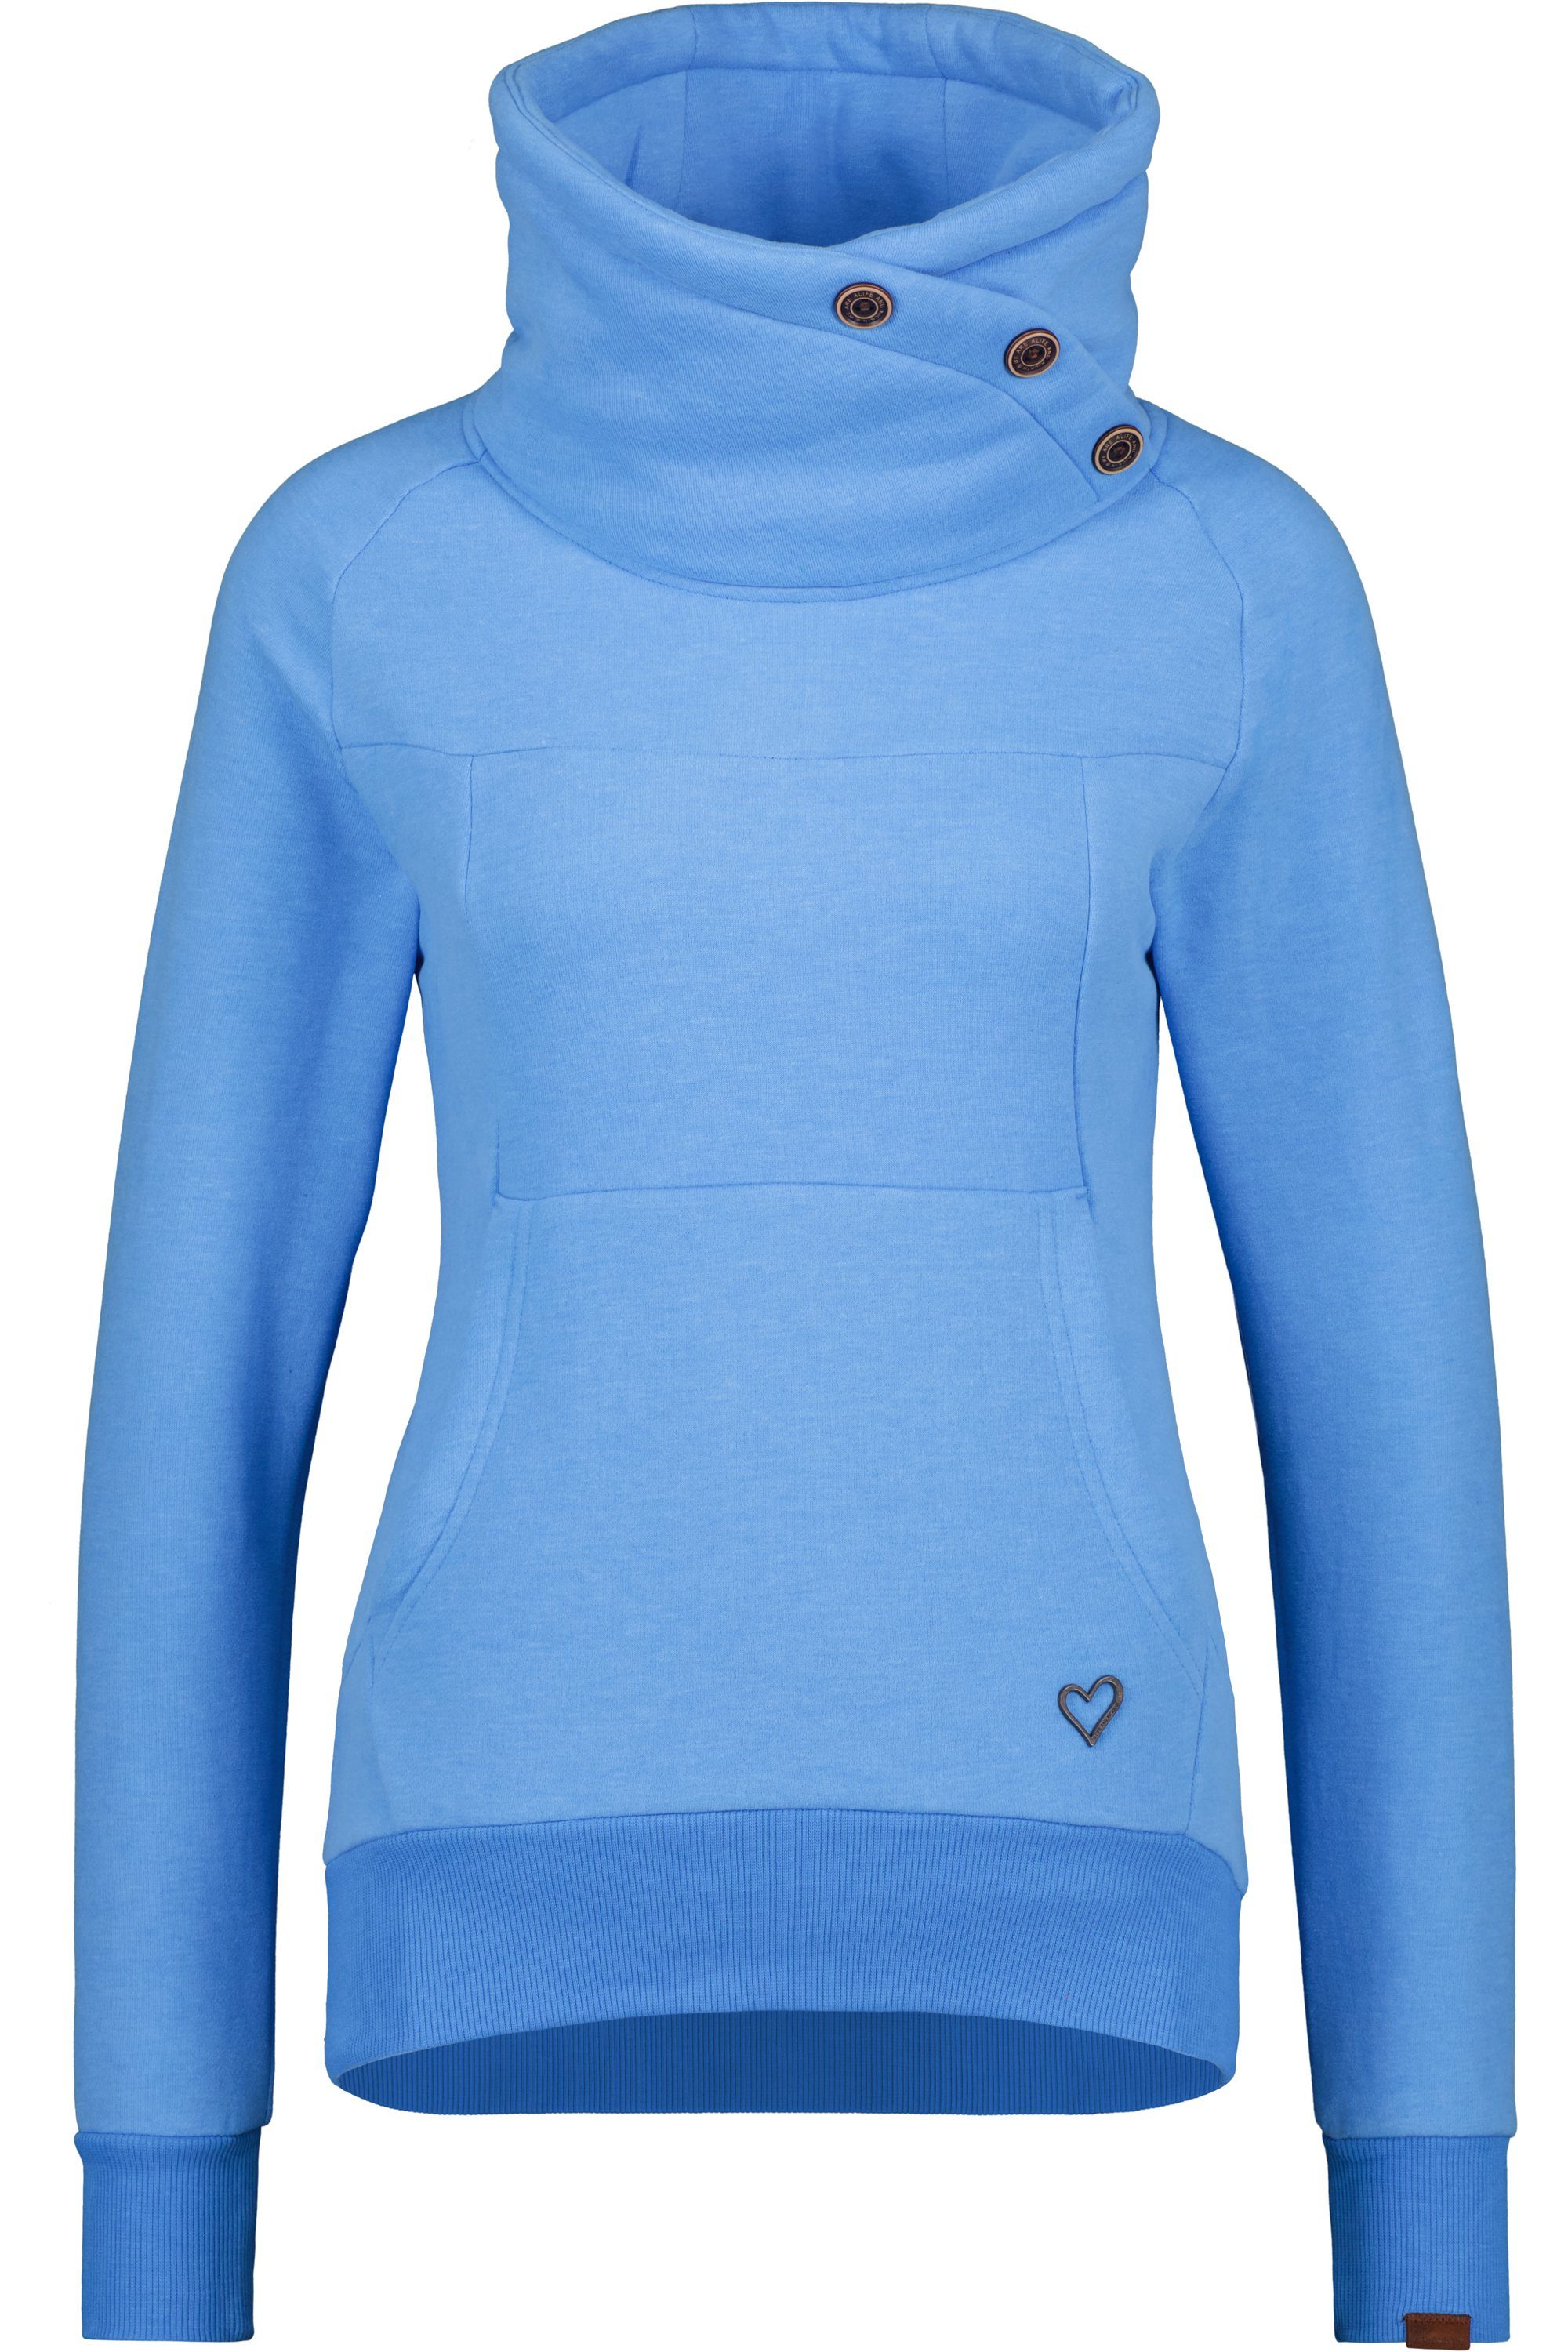 Alife & melange Kickin VioletAK Sweatshirt Sweatshirt Pullover azure Rundhalspullover, A Damen